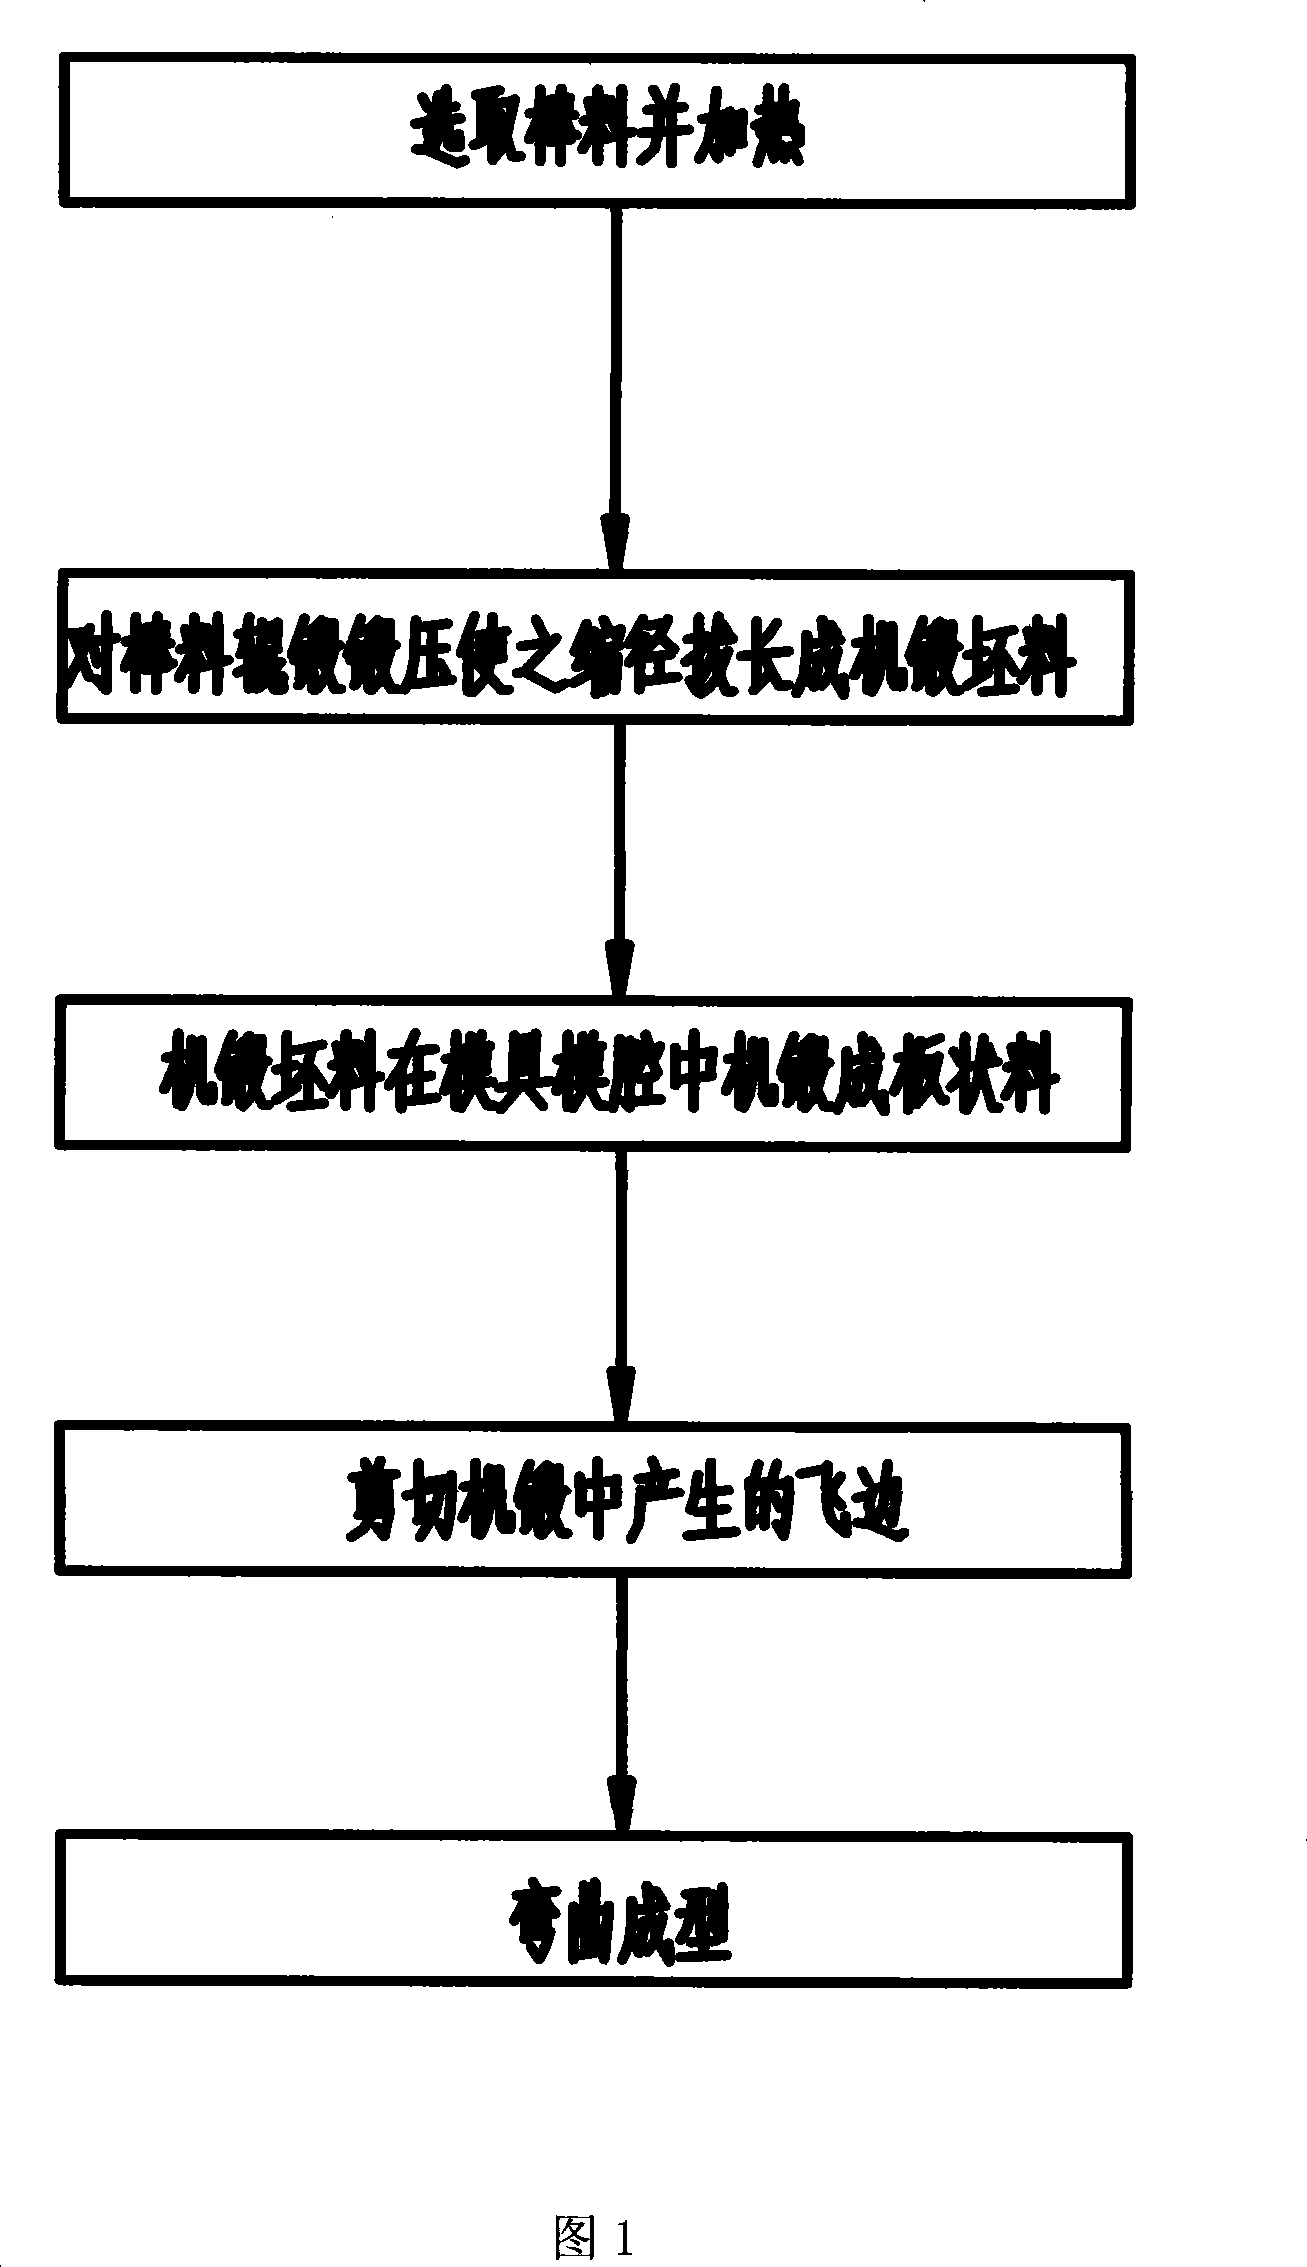 Method of preparing coupler yoke frame